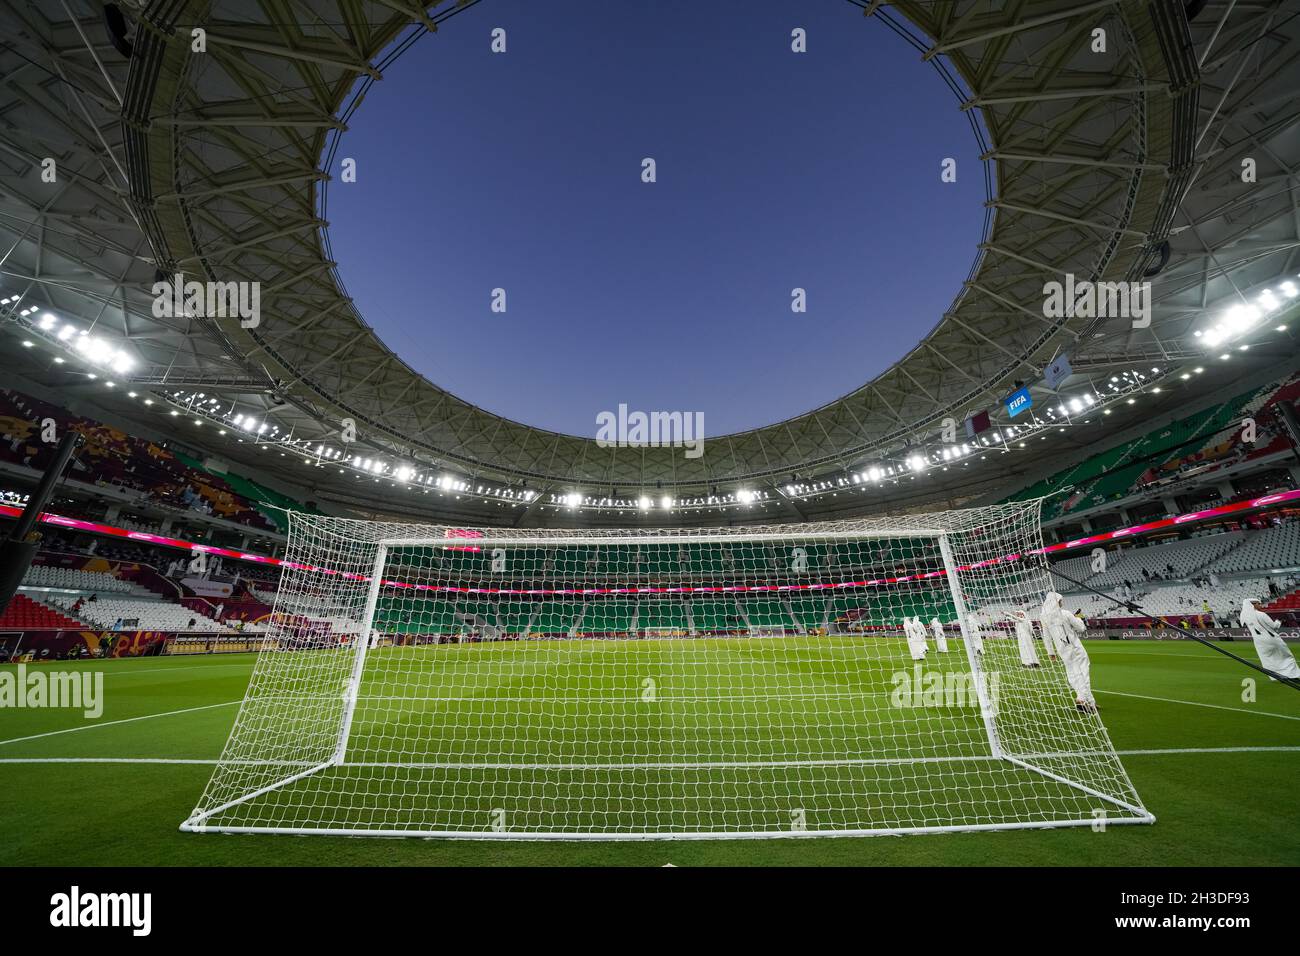 El estadio Al Thumama, inaugurado con la final de la Copa Emir 2021 el 22 de octubre de 2021, será el lugar de celebración de la Copa Mundial de la FIFA 2022 en Qatar. Foto de stock